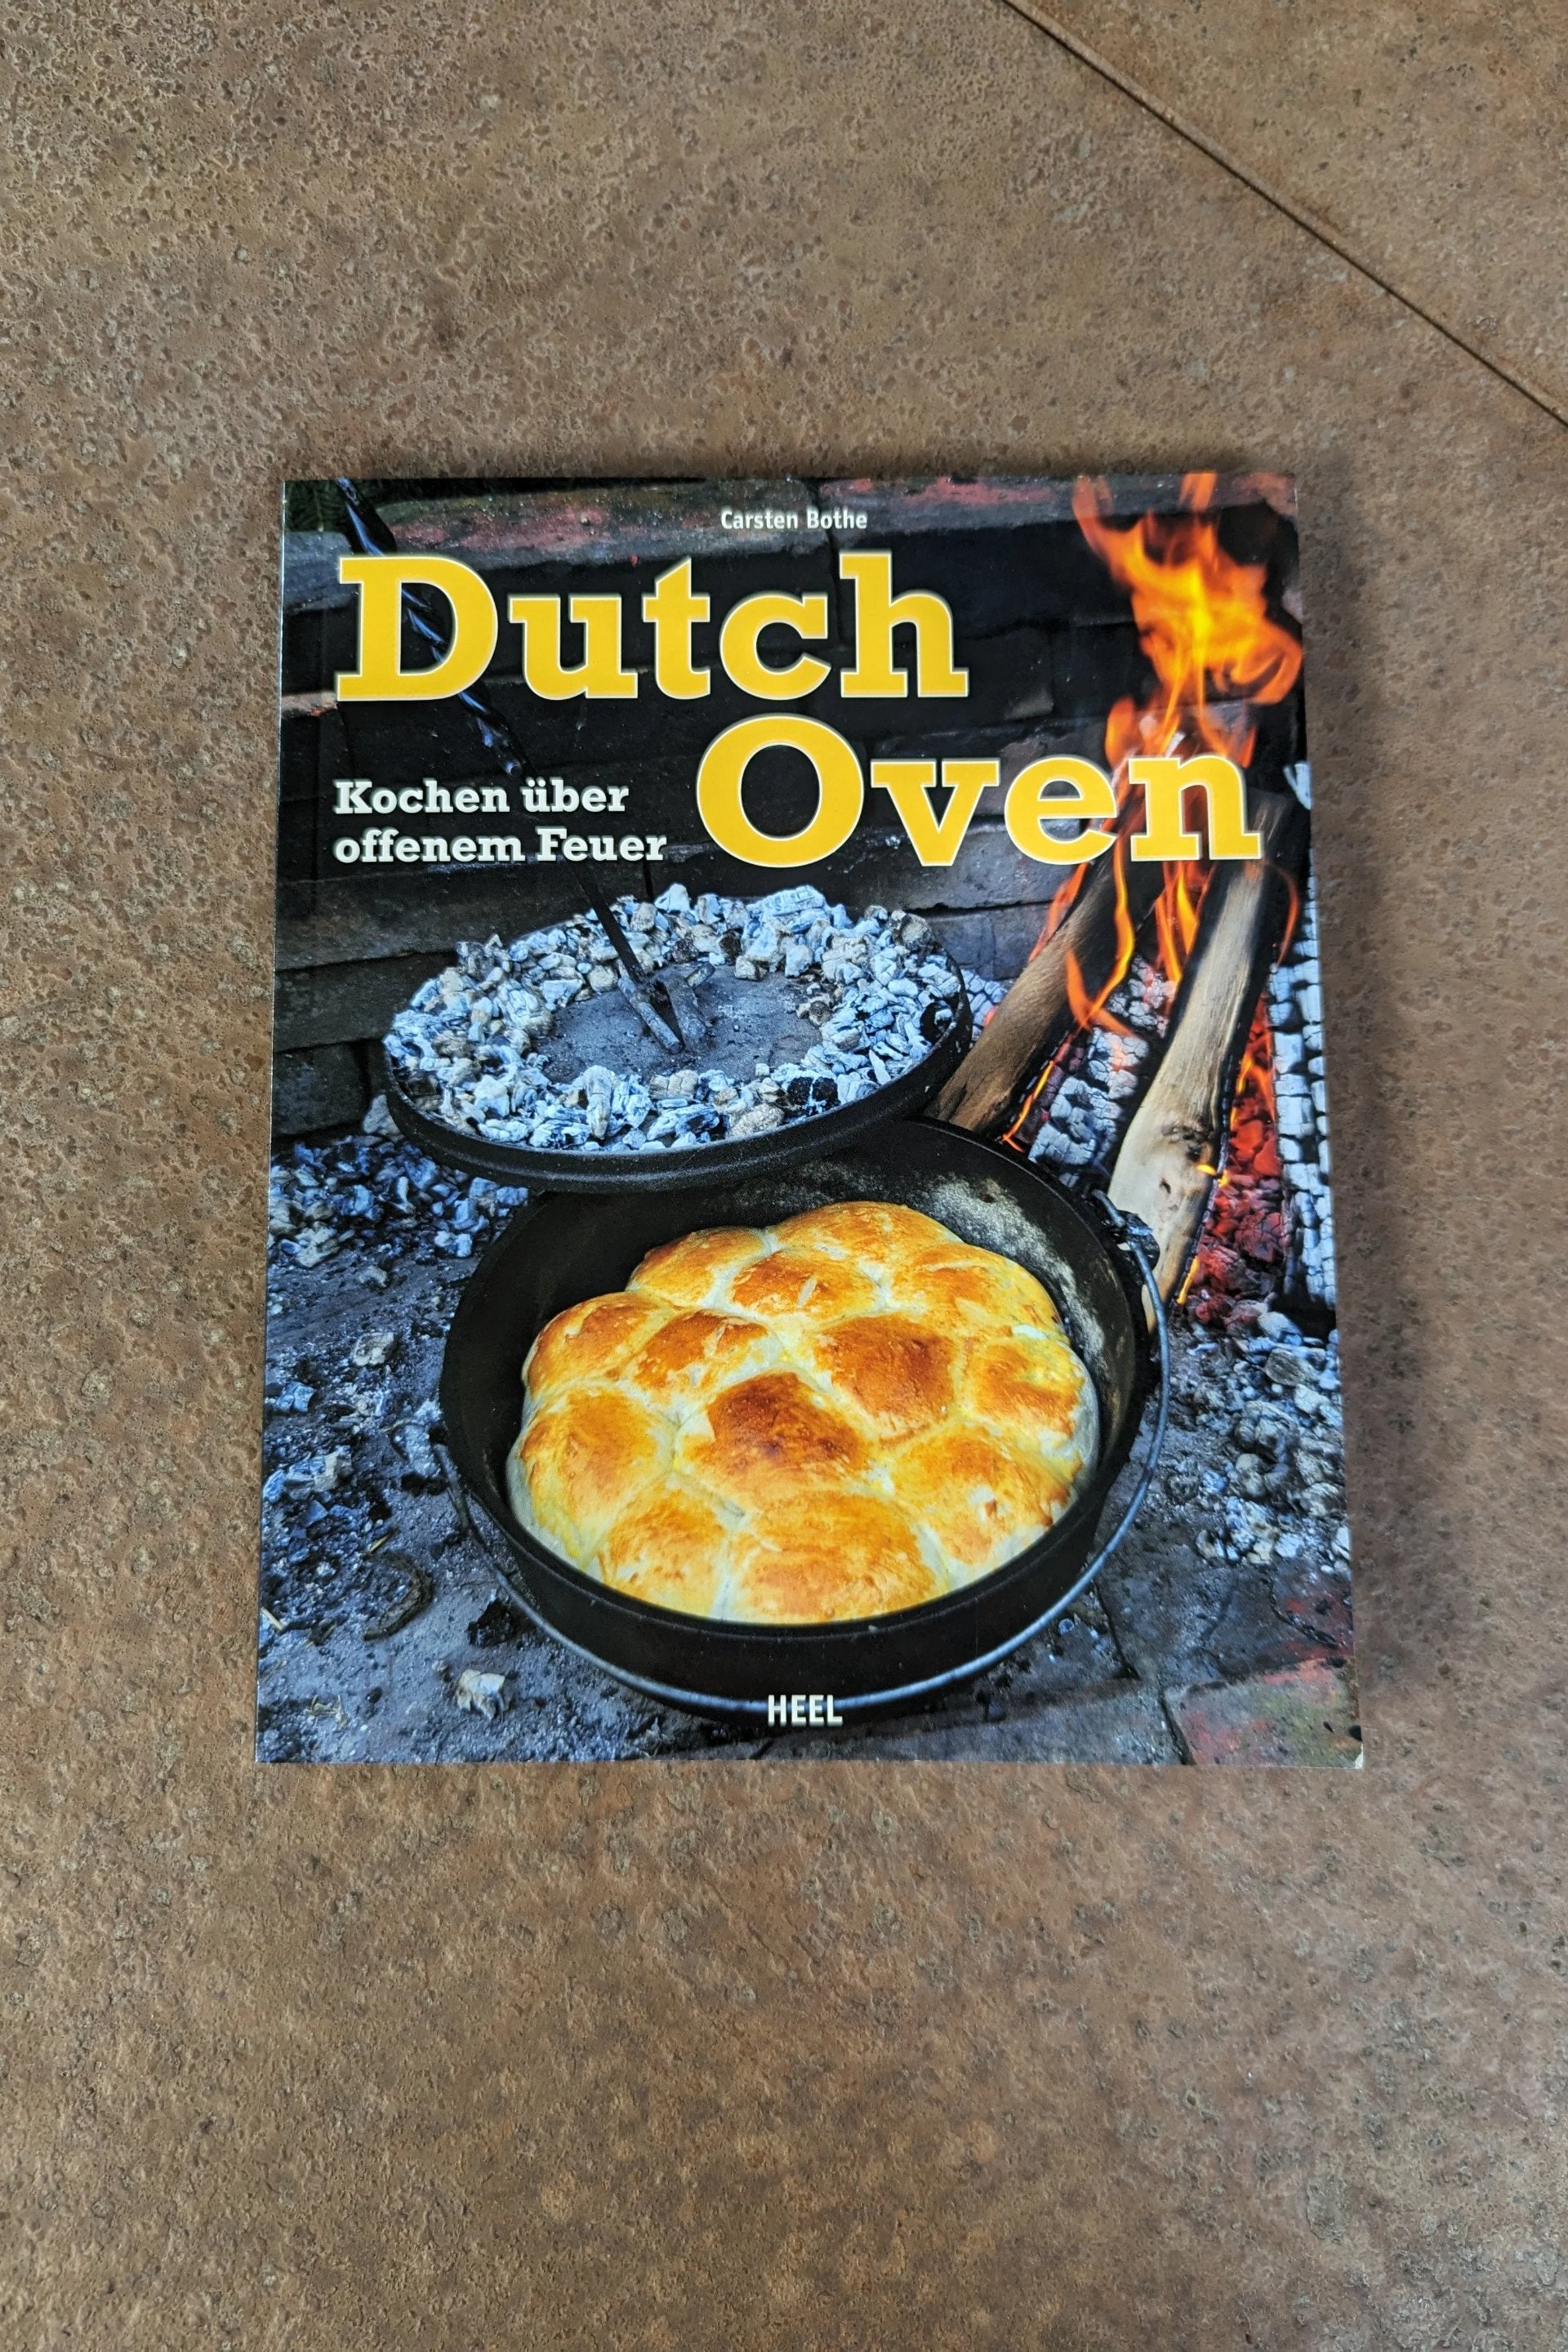 Dutch Oven Kochbuch